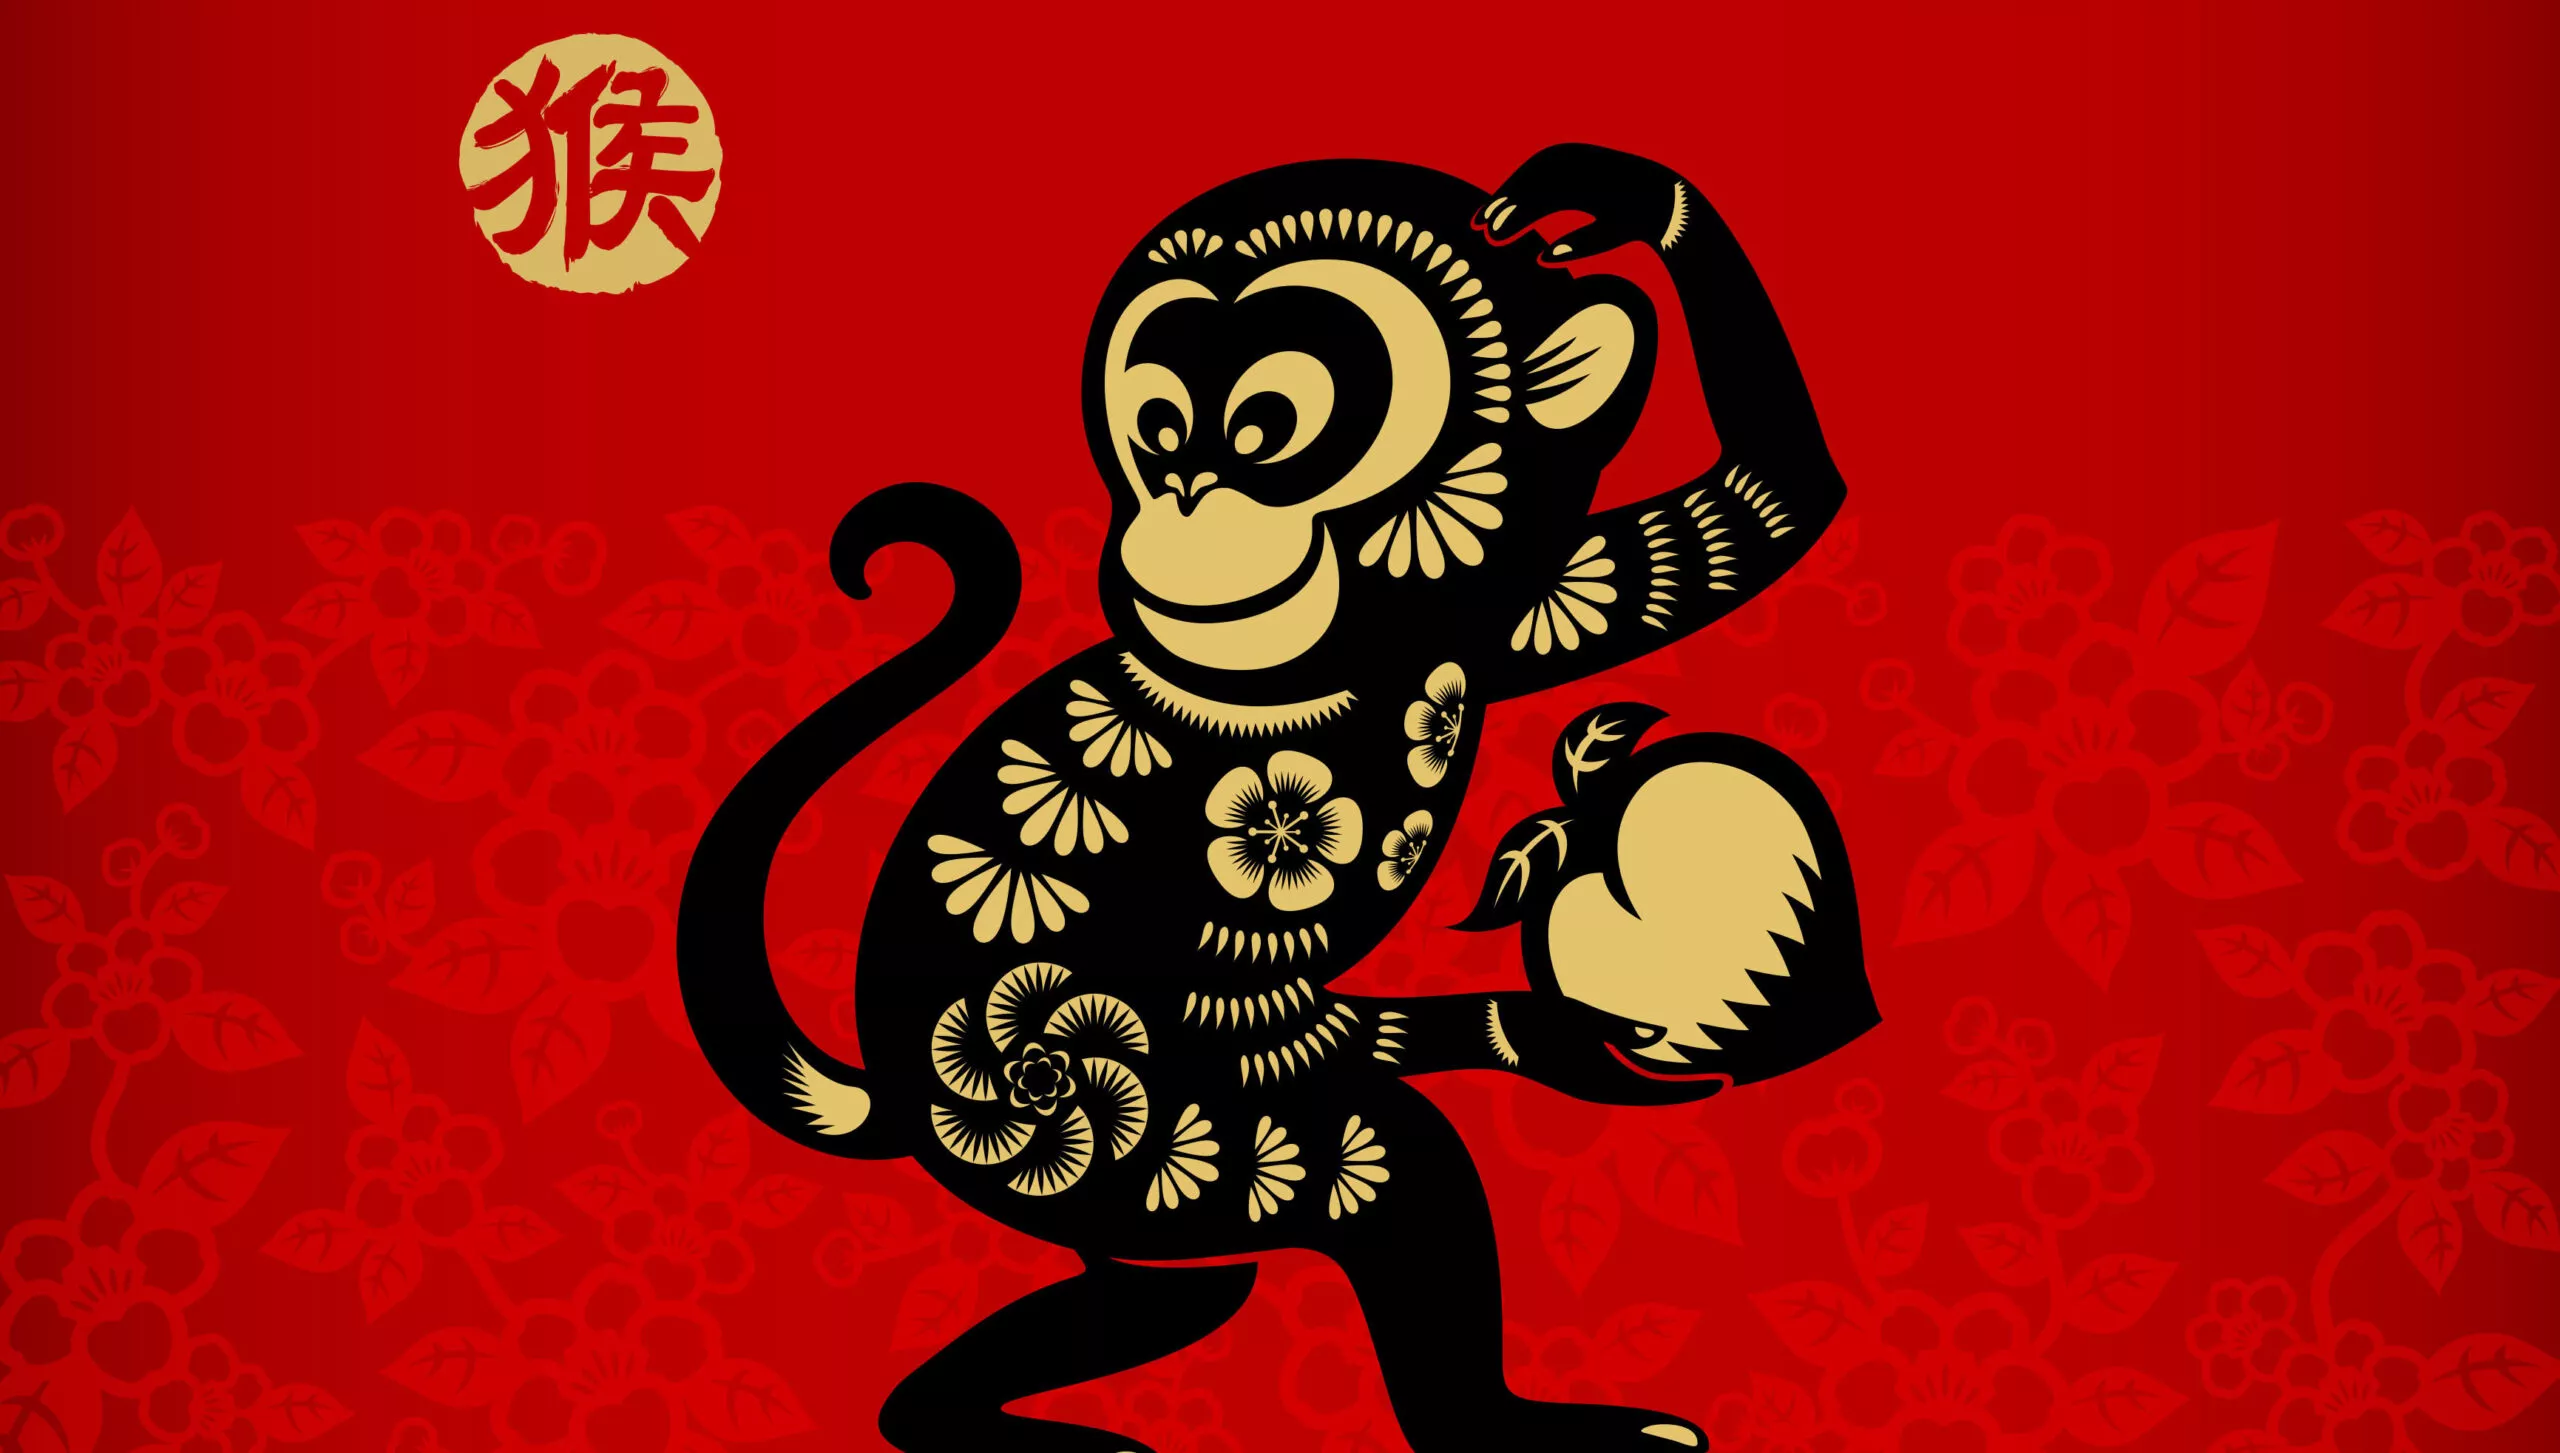 Apina on yksi eläinmerkki. Kiinalainen horoskooppi sisältää 12 horoskooppimerkkiä.